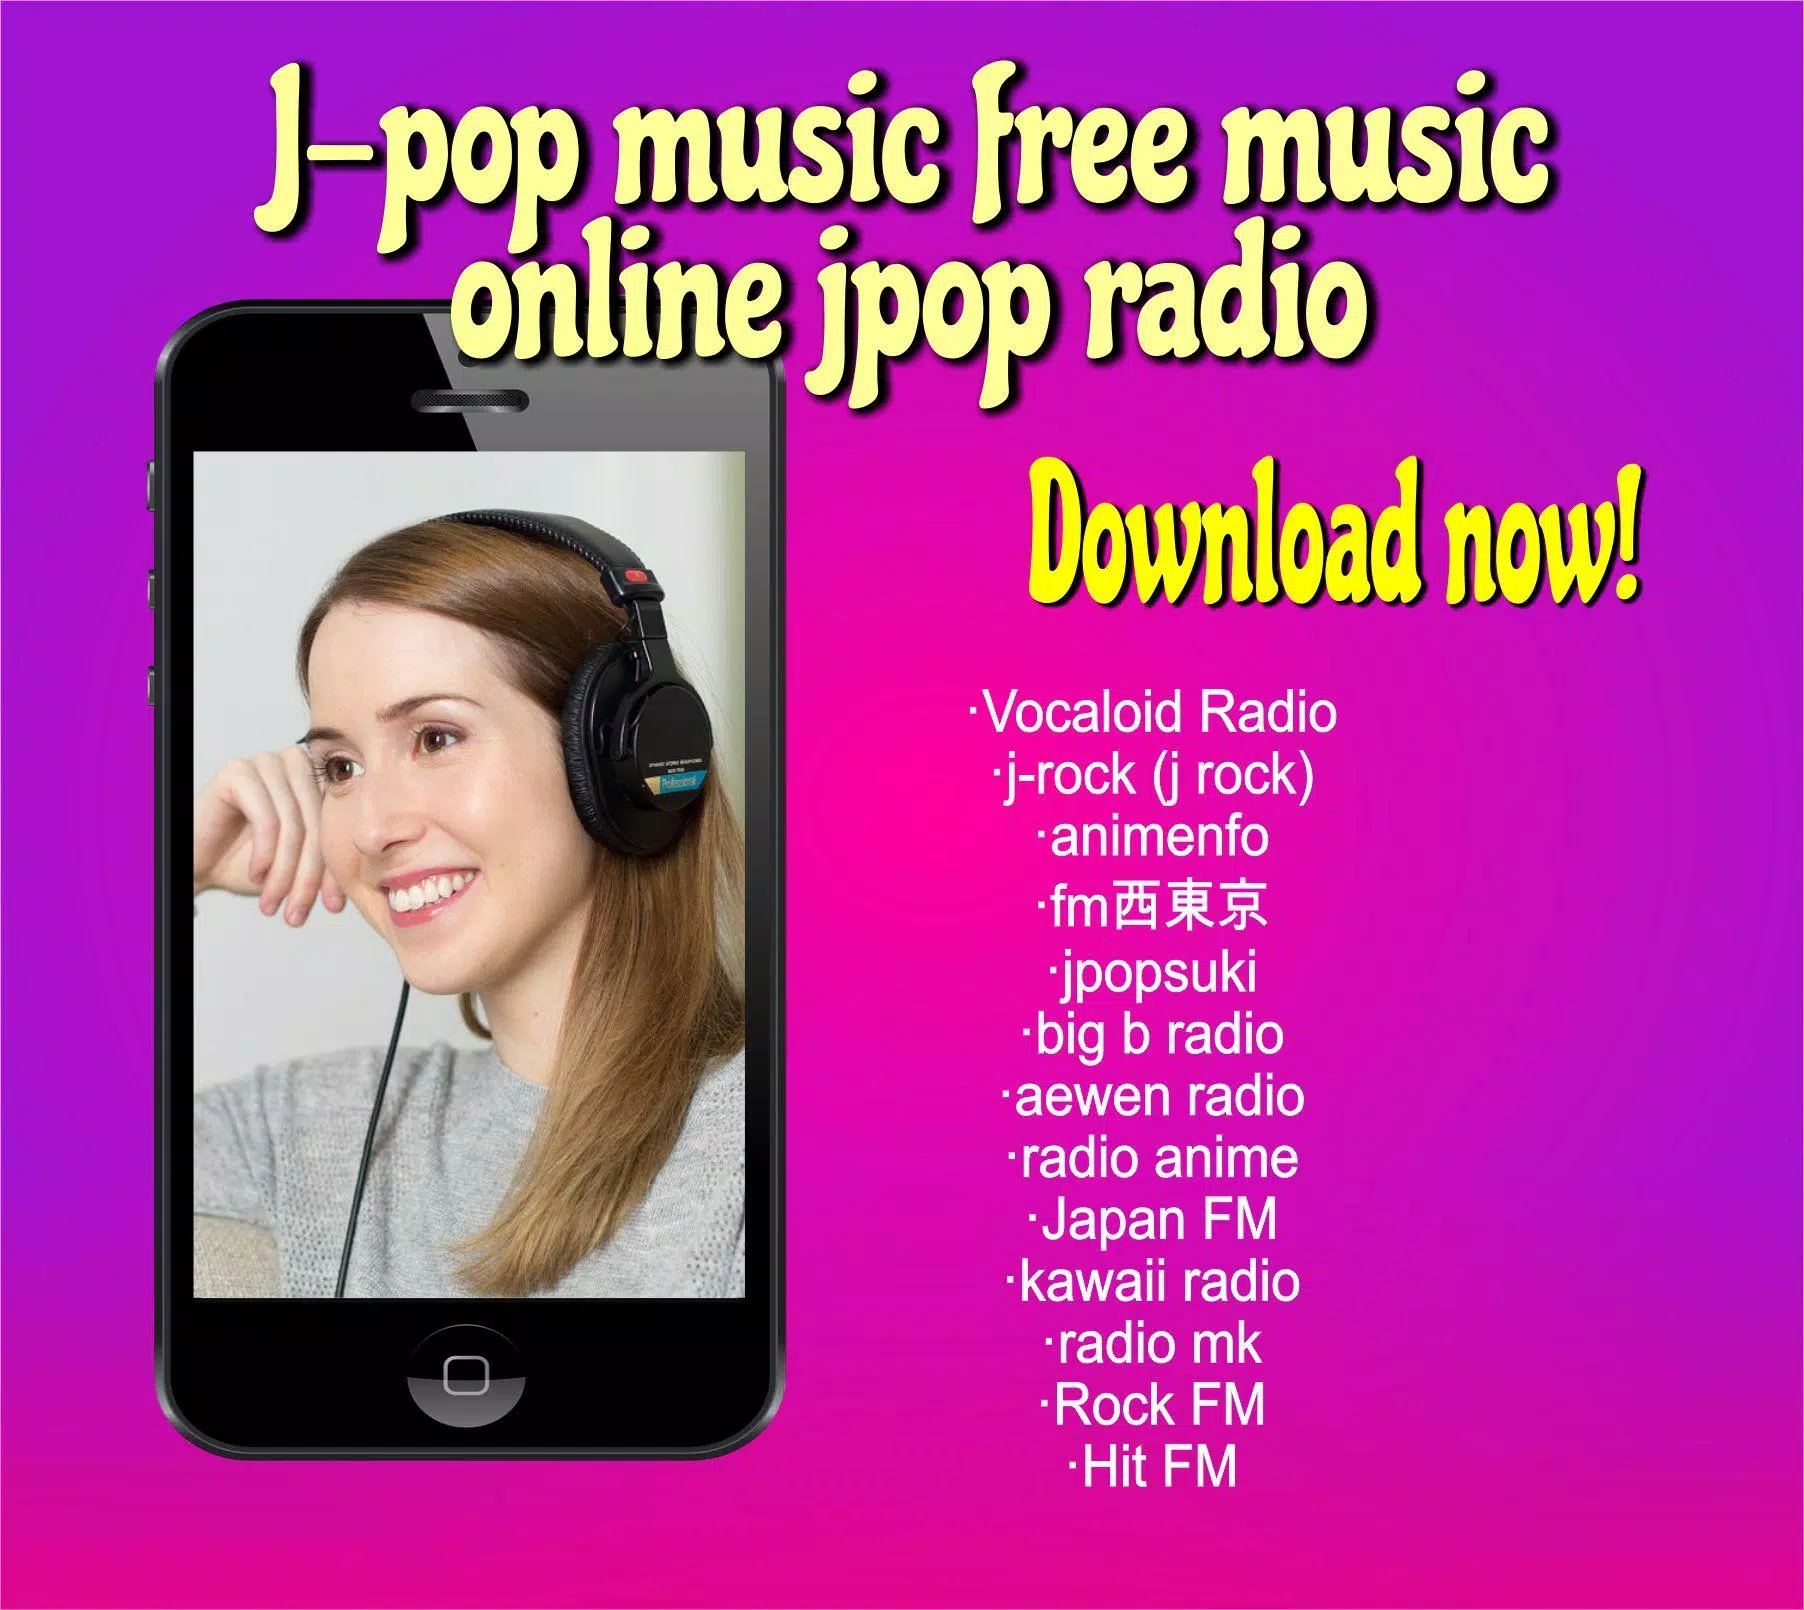 Descarga de APK de J-pop free music online jpop radio para